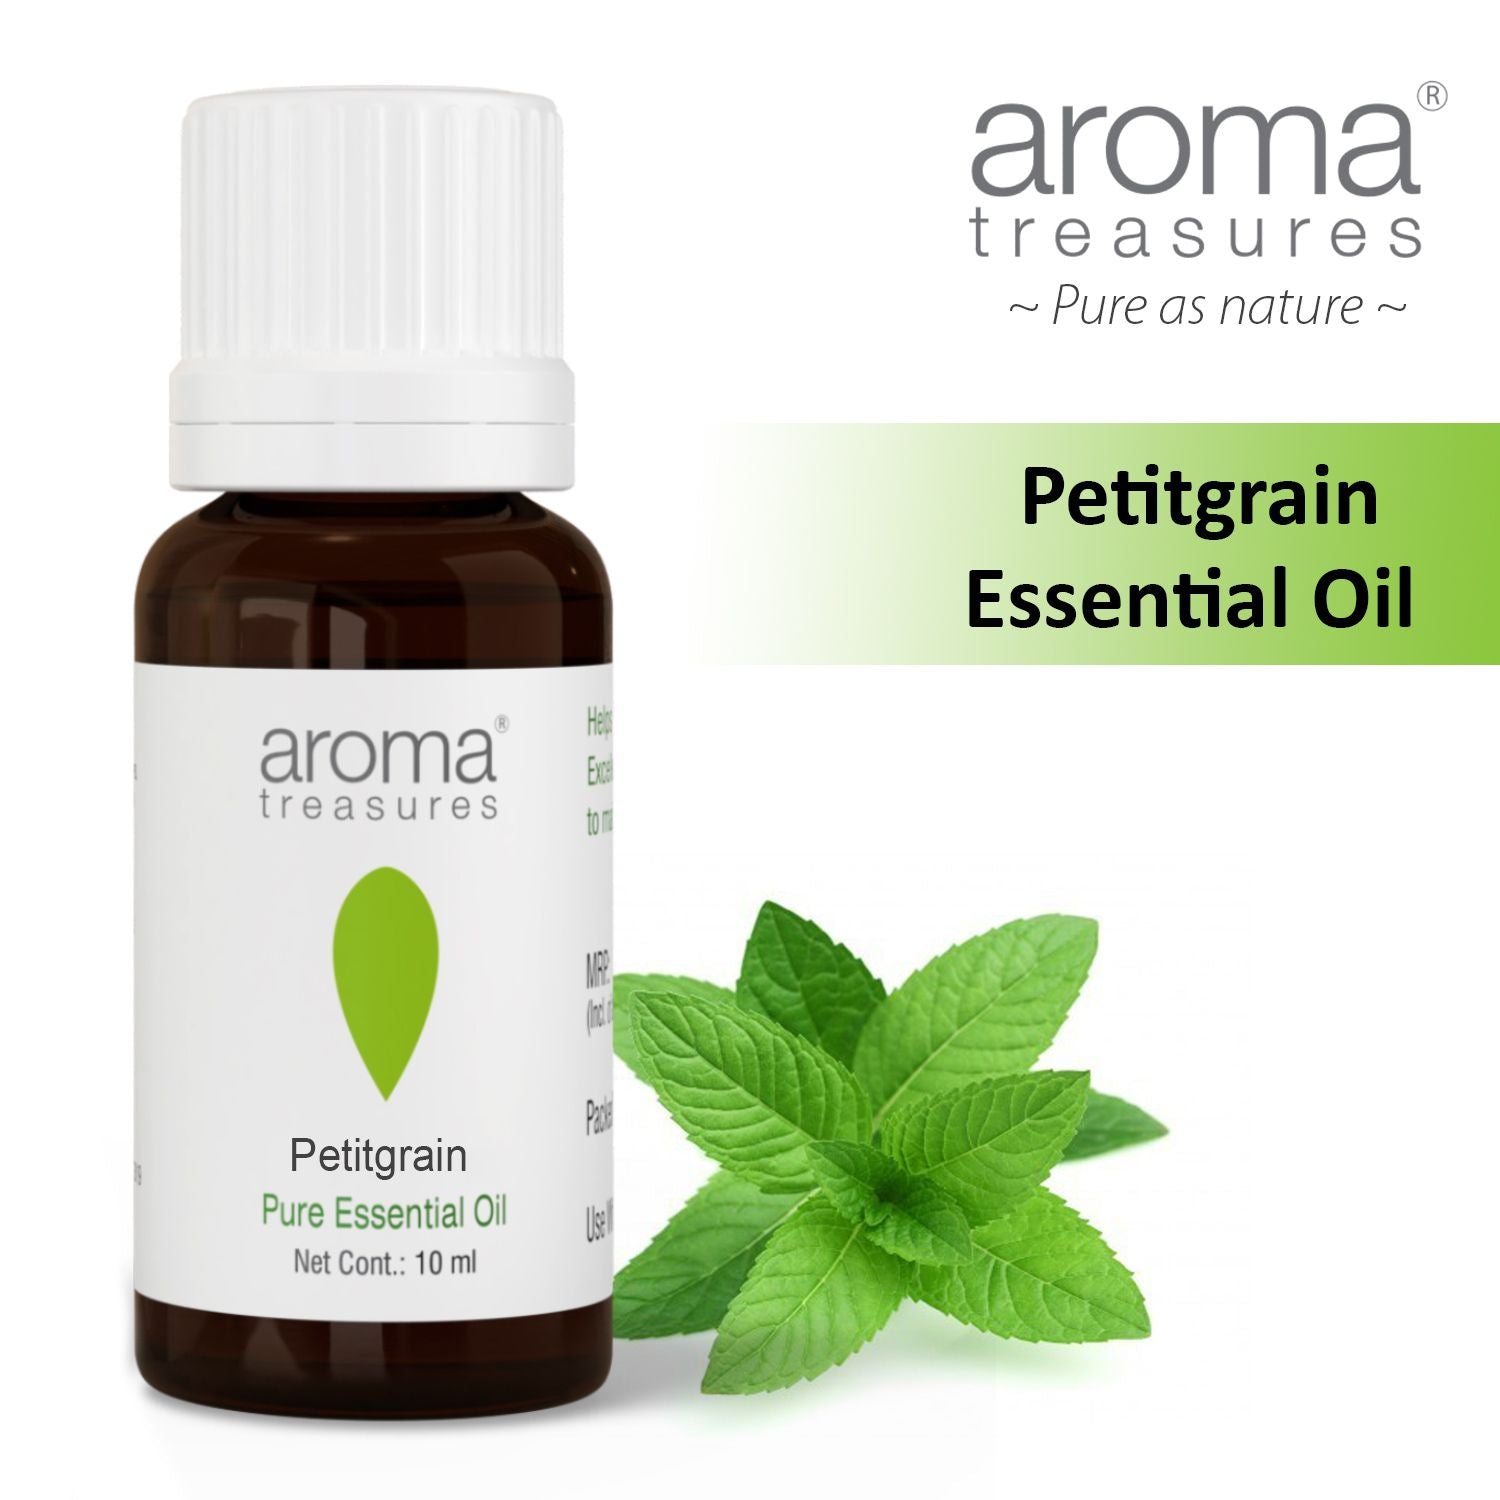 Aroma Treasures Petitgrain Essential Oil (10ml)